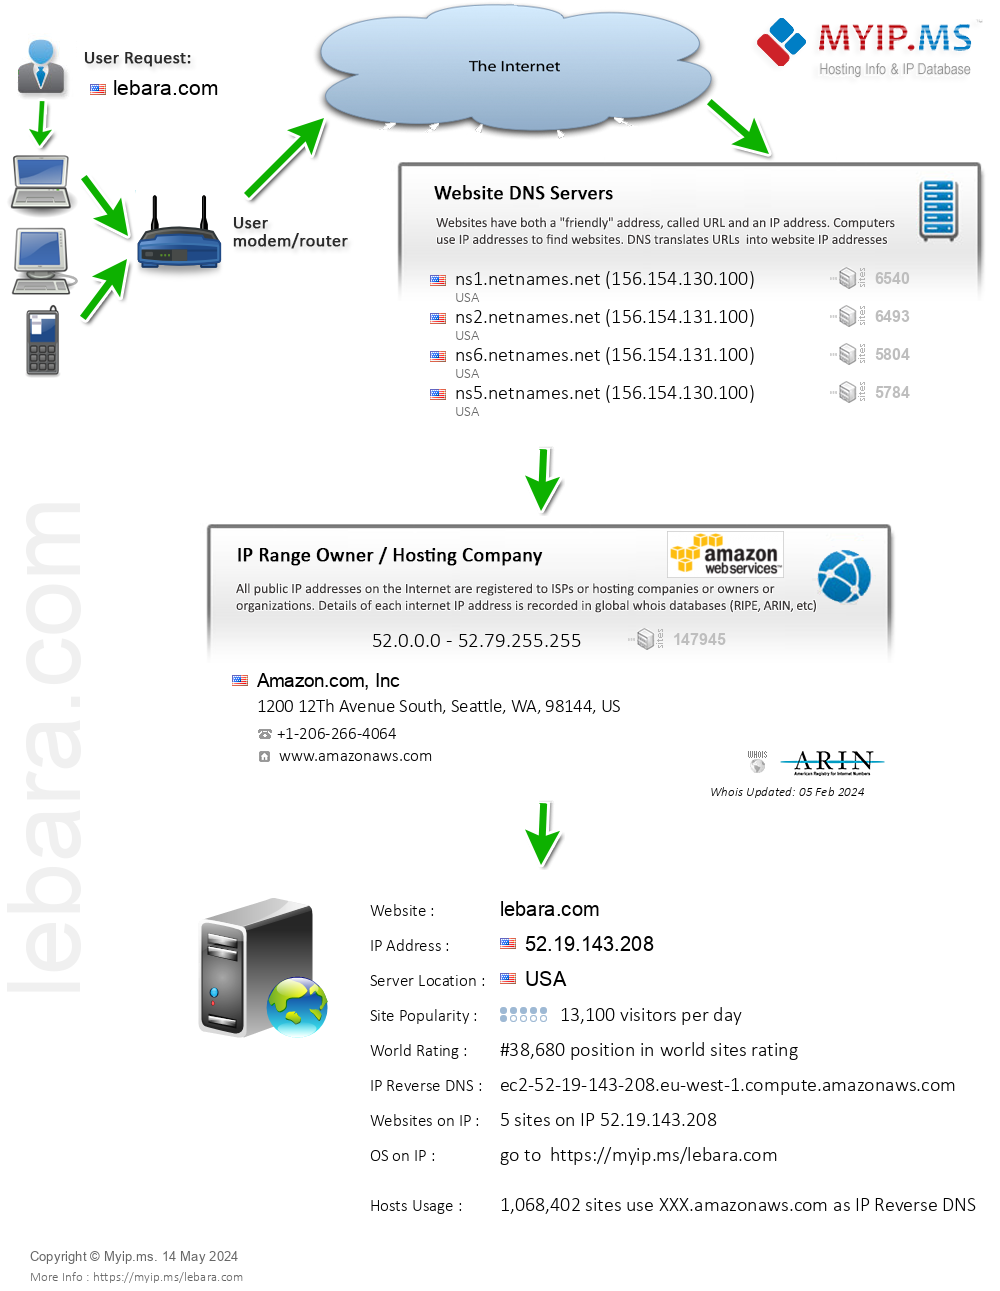 Lebara.com - Website Hosting Visual IP Diagram